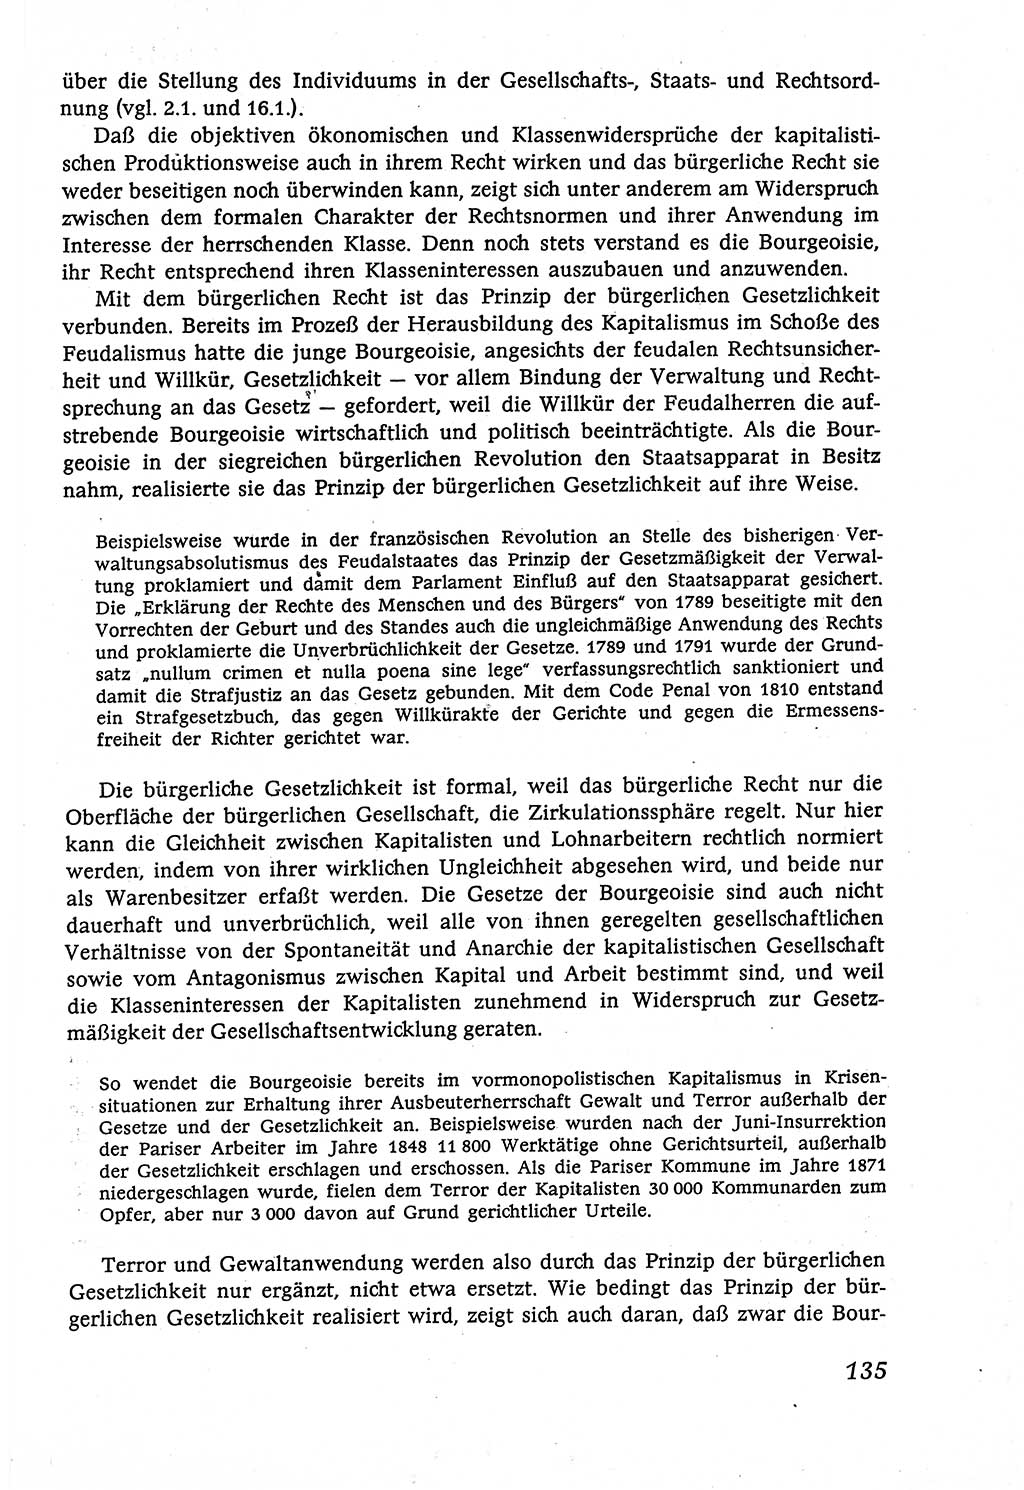 Marxistisch-leninistische (ML) Staats- und Rechtstheorie [Deutsche Demokratische Republik (DDR)], Lehrbuch 1980, Seite 135 (ML St.-R.-Th. DDR Lb. 1980, S. 135)